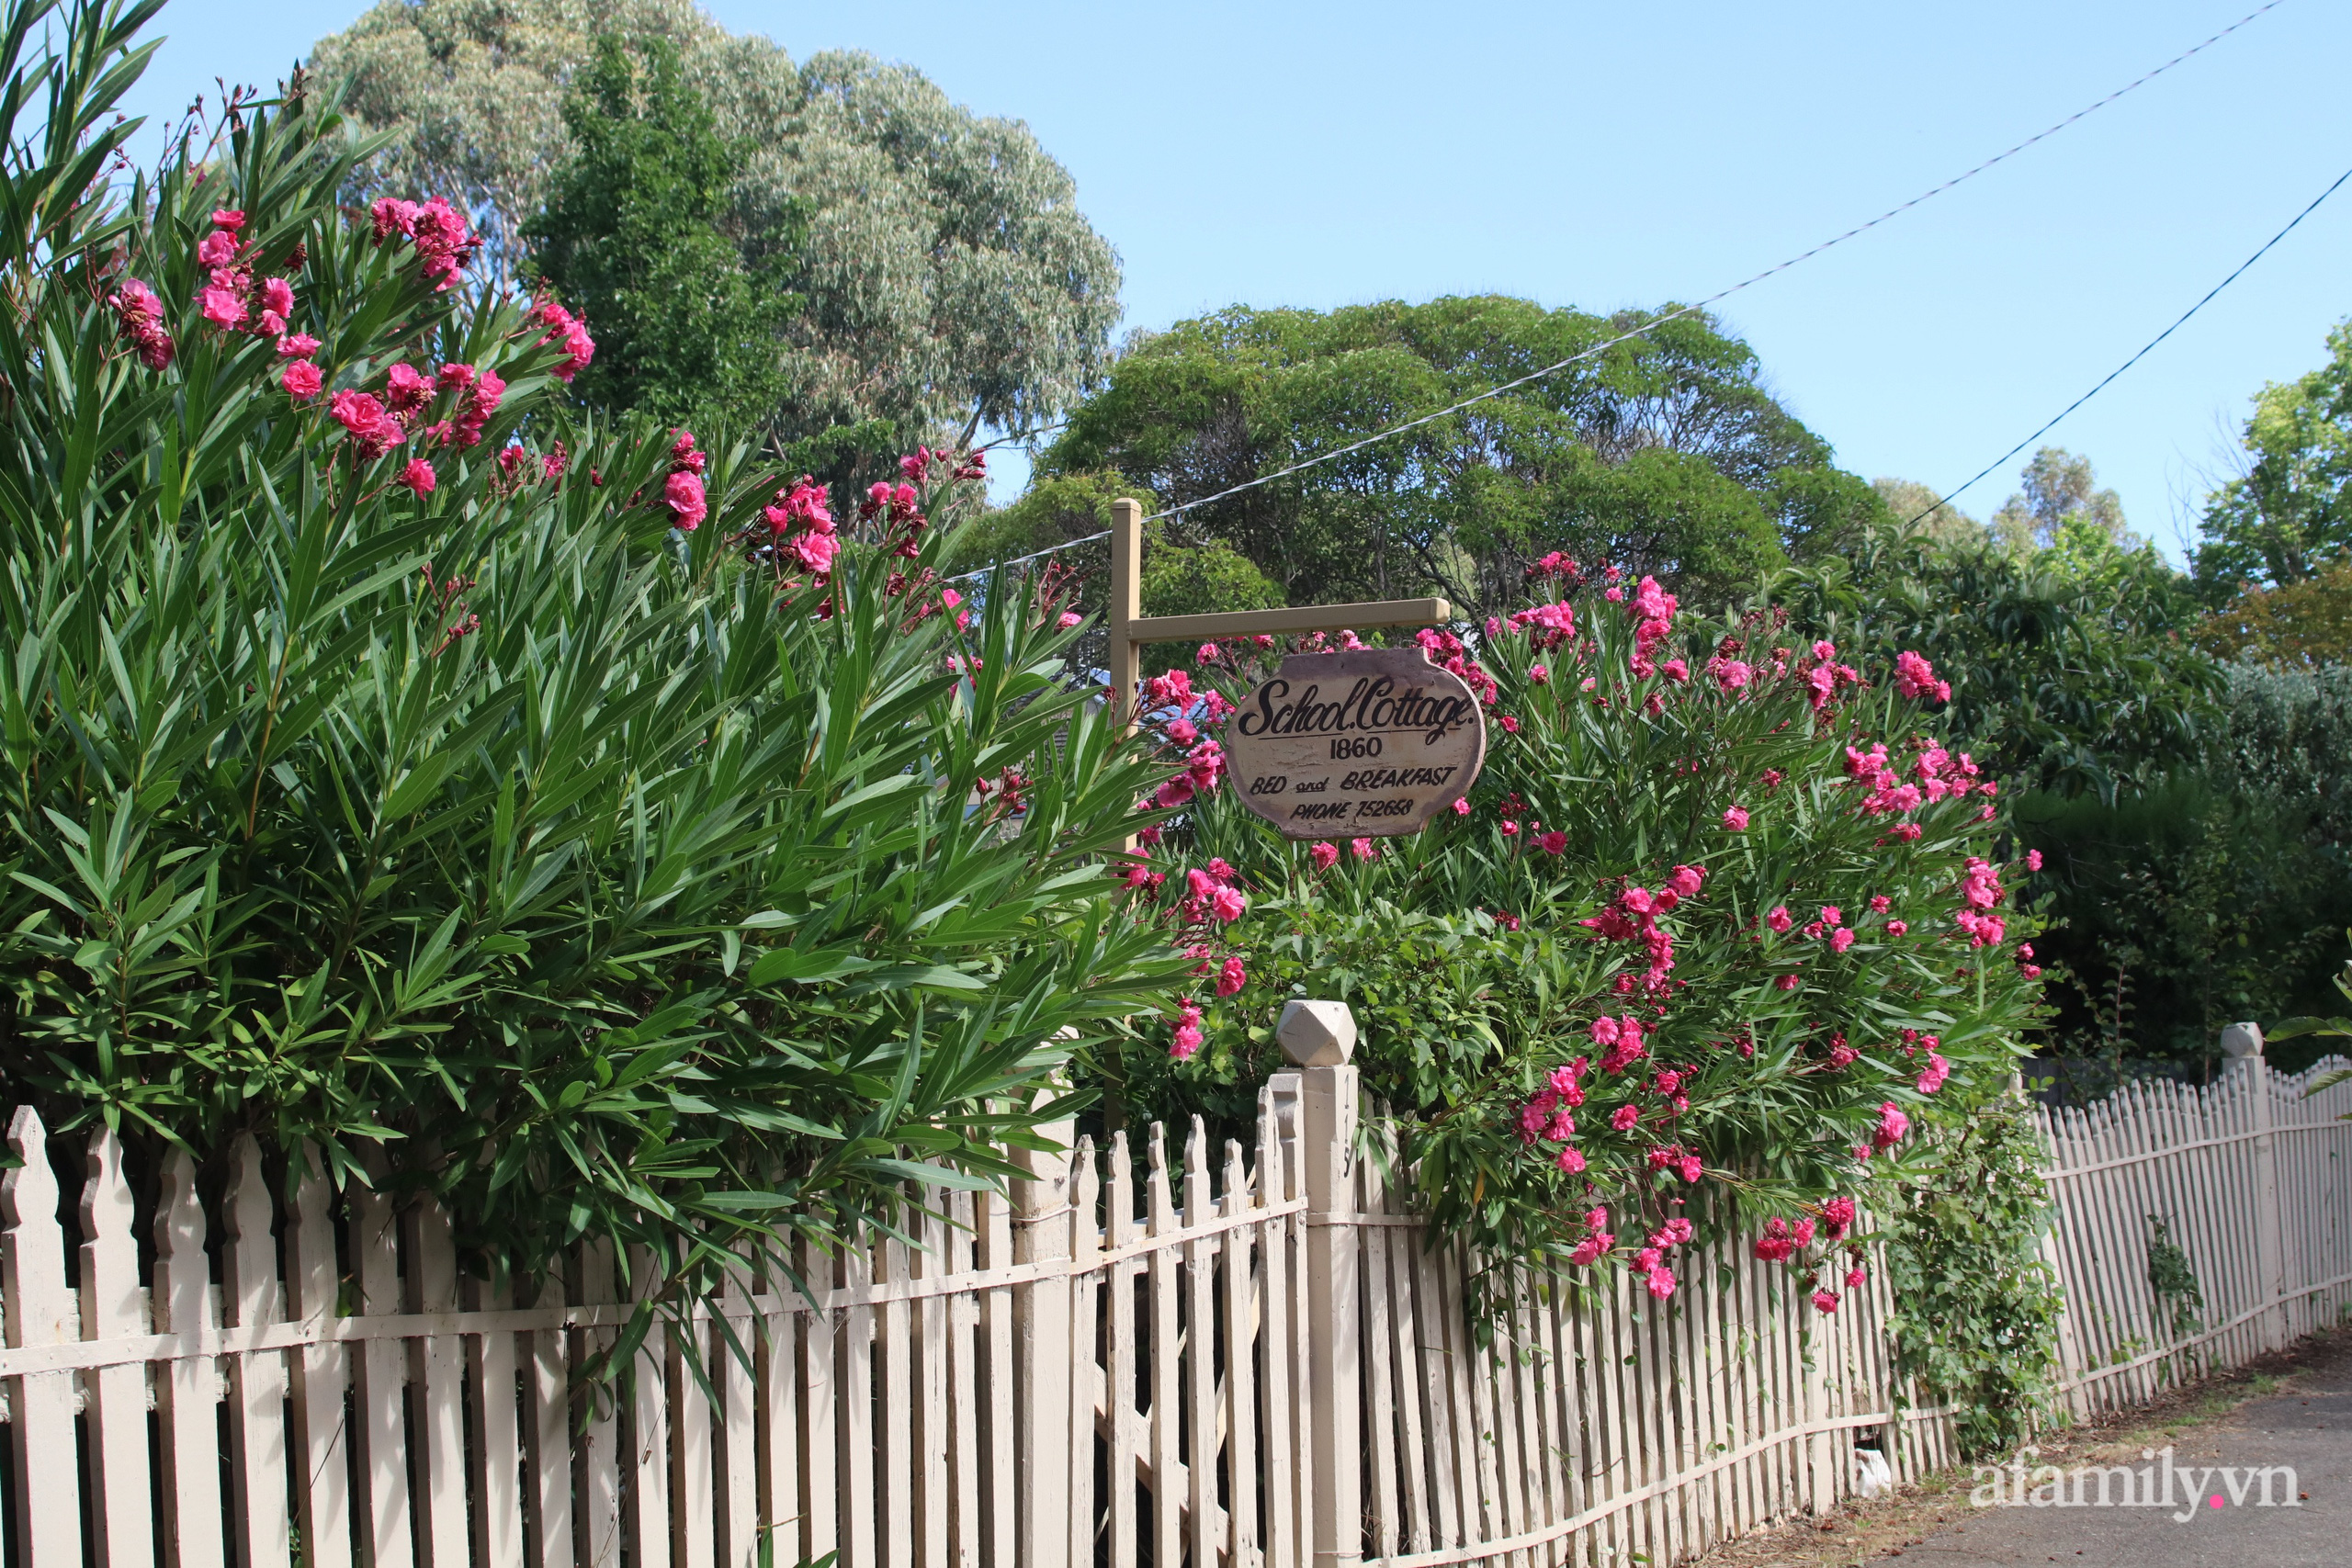 Căn nhà cổ xây cách đây 160 năm đẹp bình yên giữa vườn cây xanh mát ở Úc - Ảnh 4.